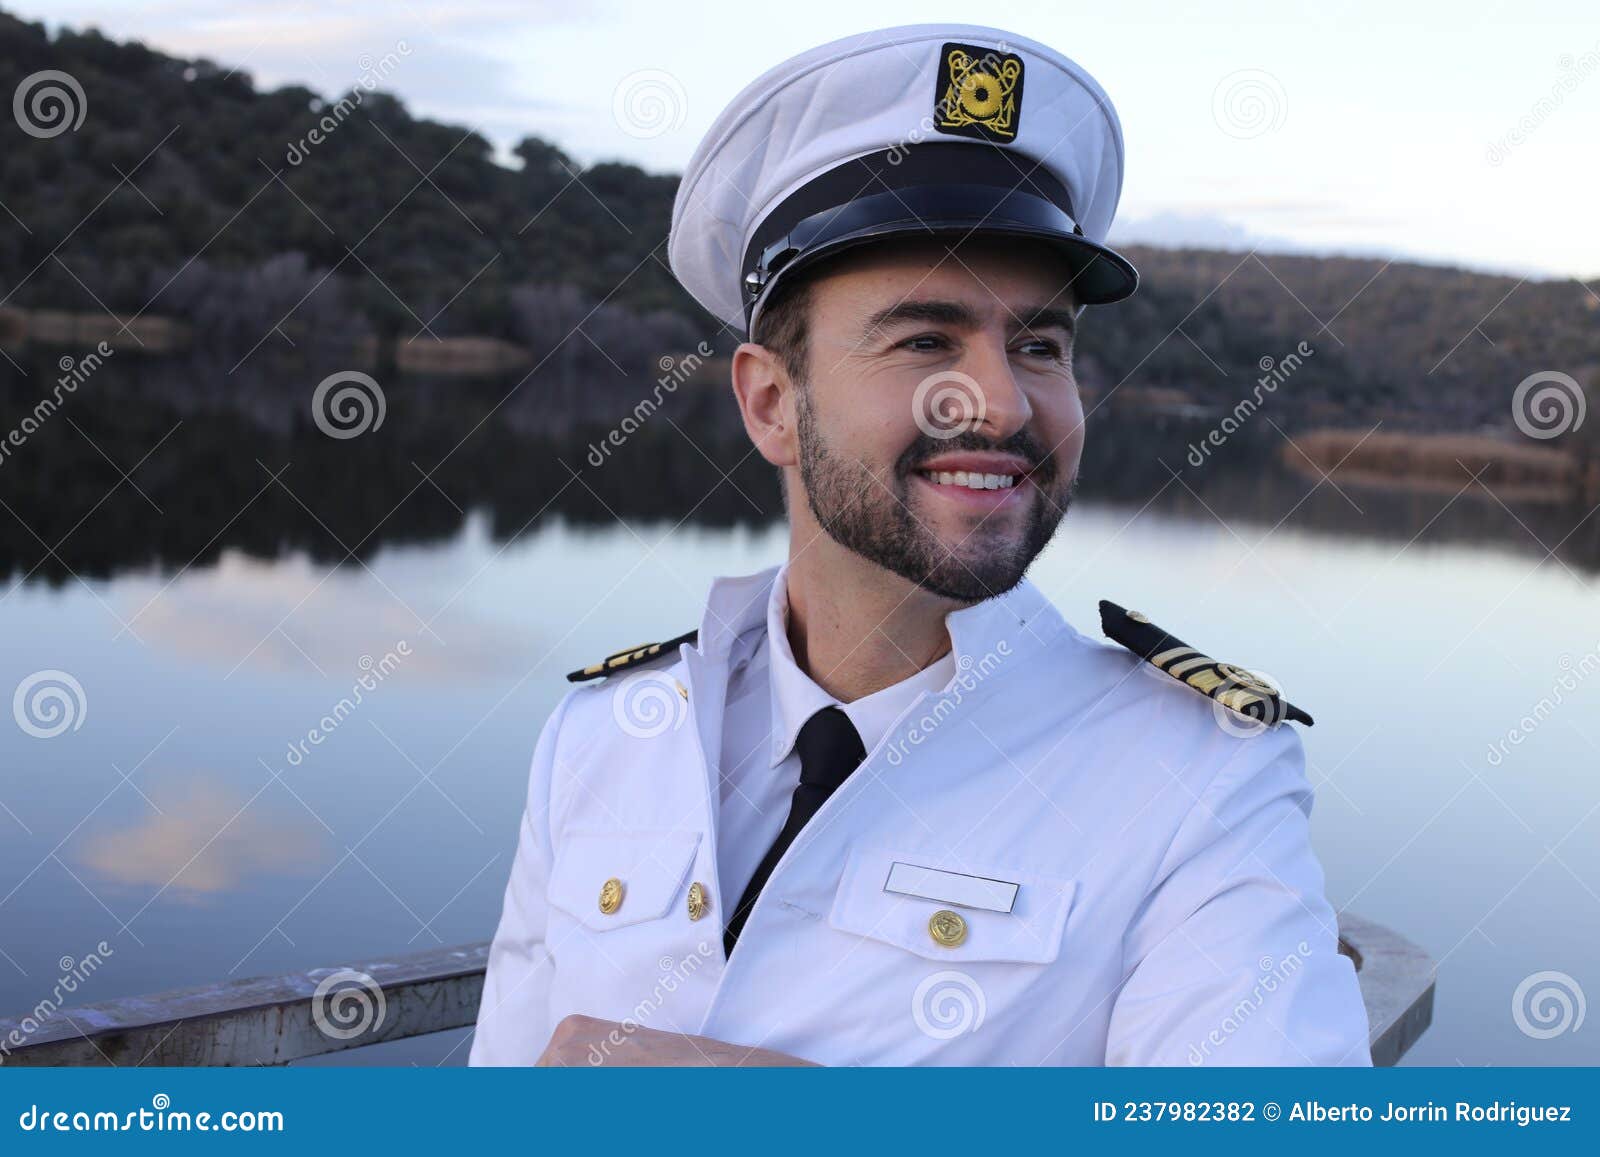 cruise ship captain formal